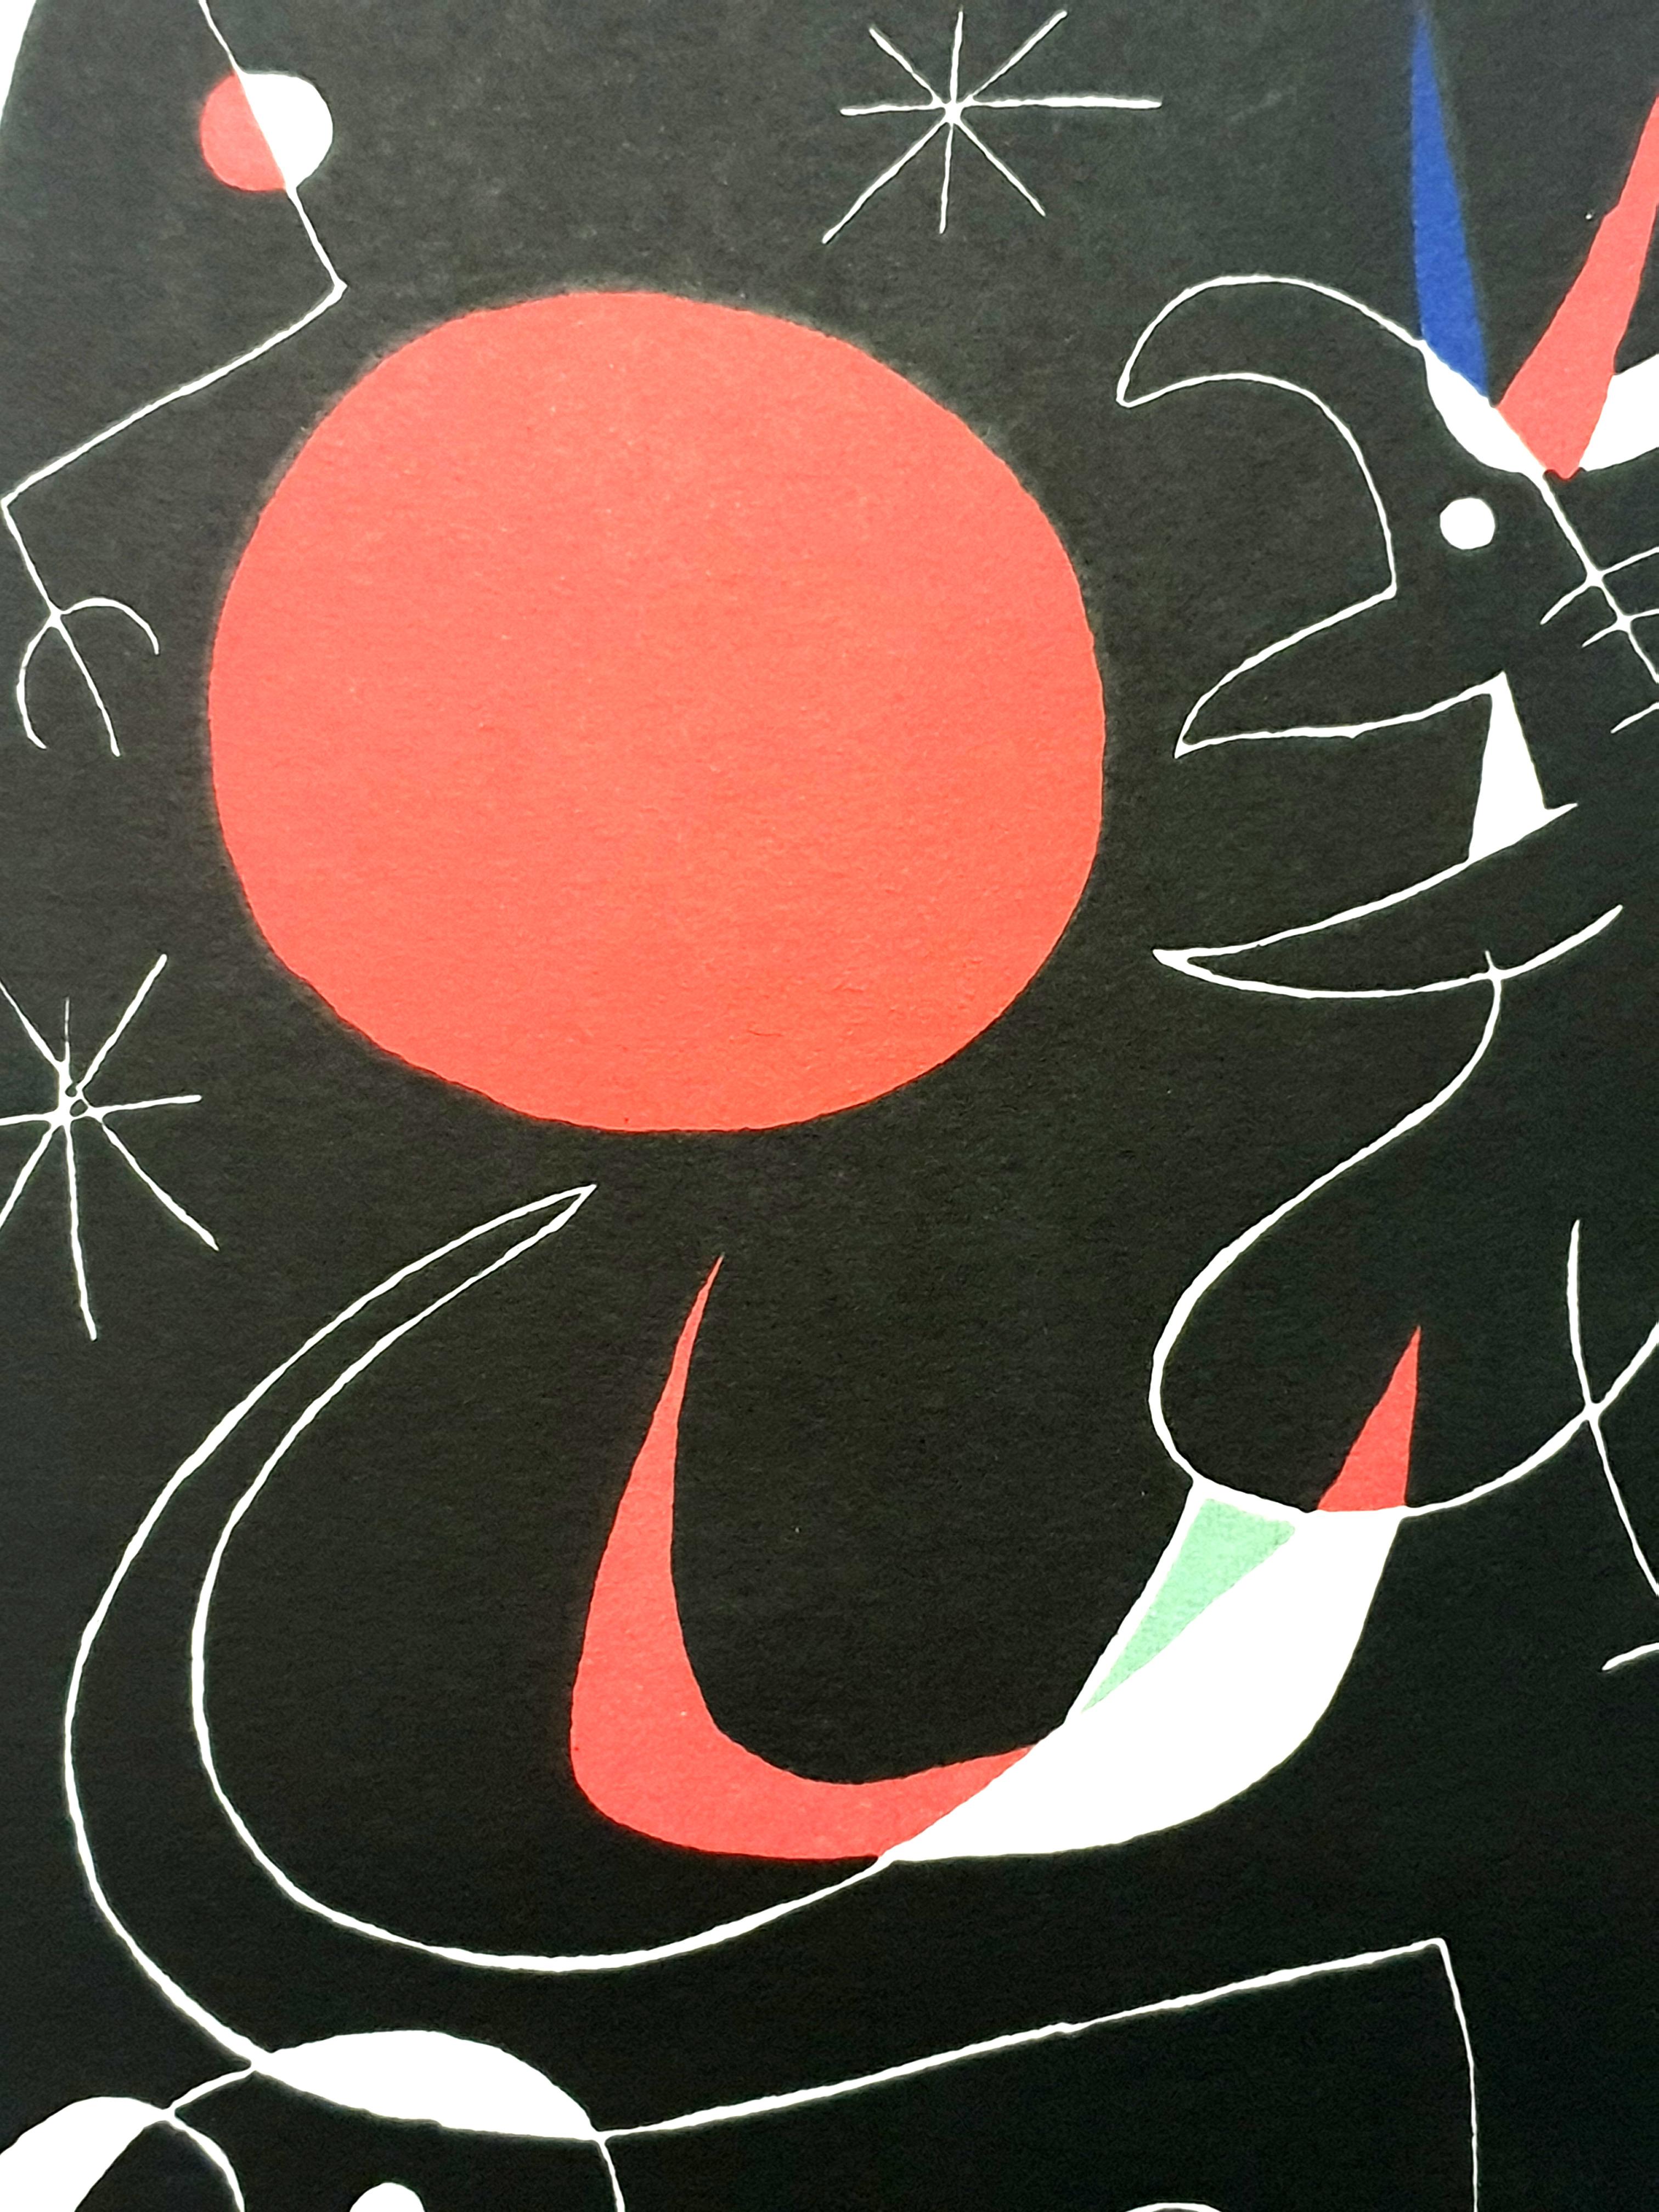 Joan Miro - Ciel de nuit - Lithographie originale
Artiste : Joan Miro
Editeur : Maeght
Année : 1956
Dimensions : 23 x 20 cm
Référence : Mourlot 235
Non signé et non numéroté tel que publié.